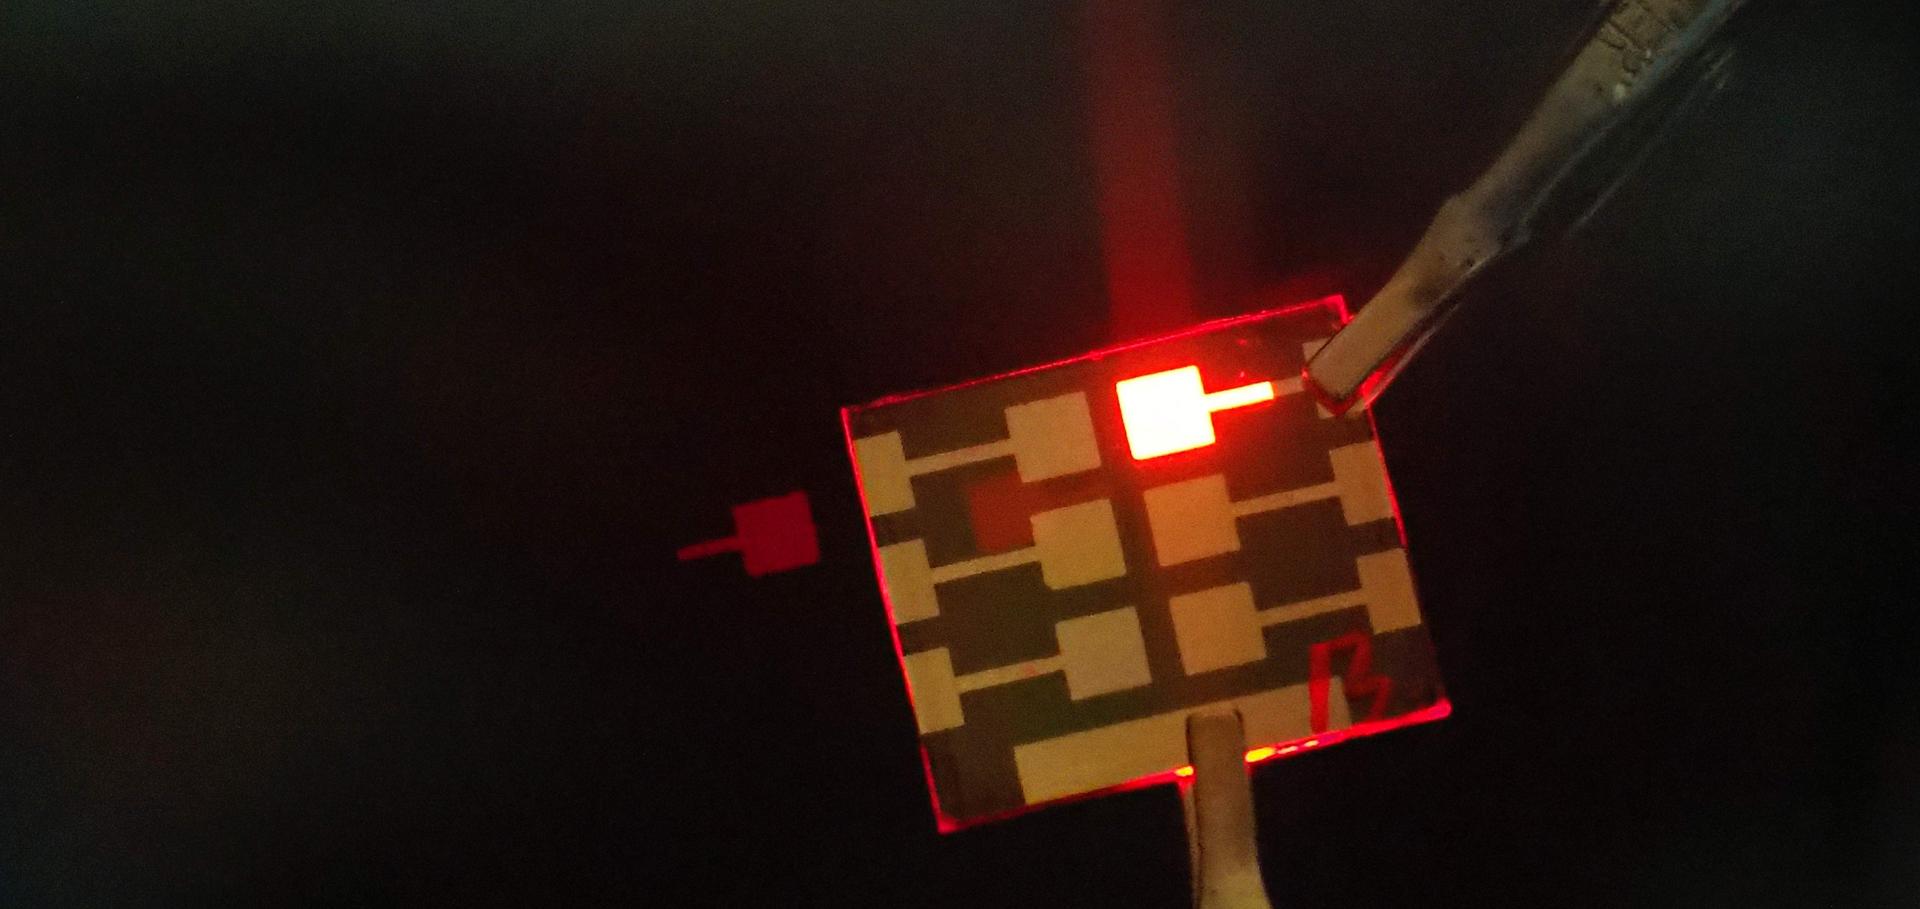 A red emitting perovskite LEDs